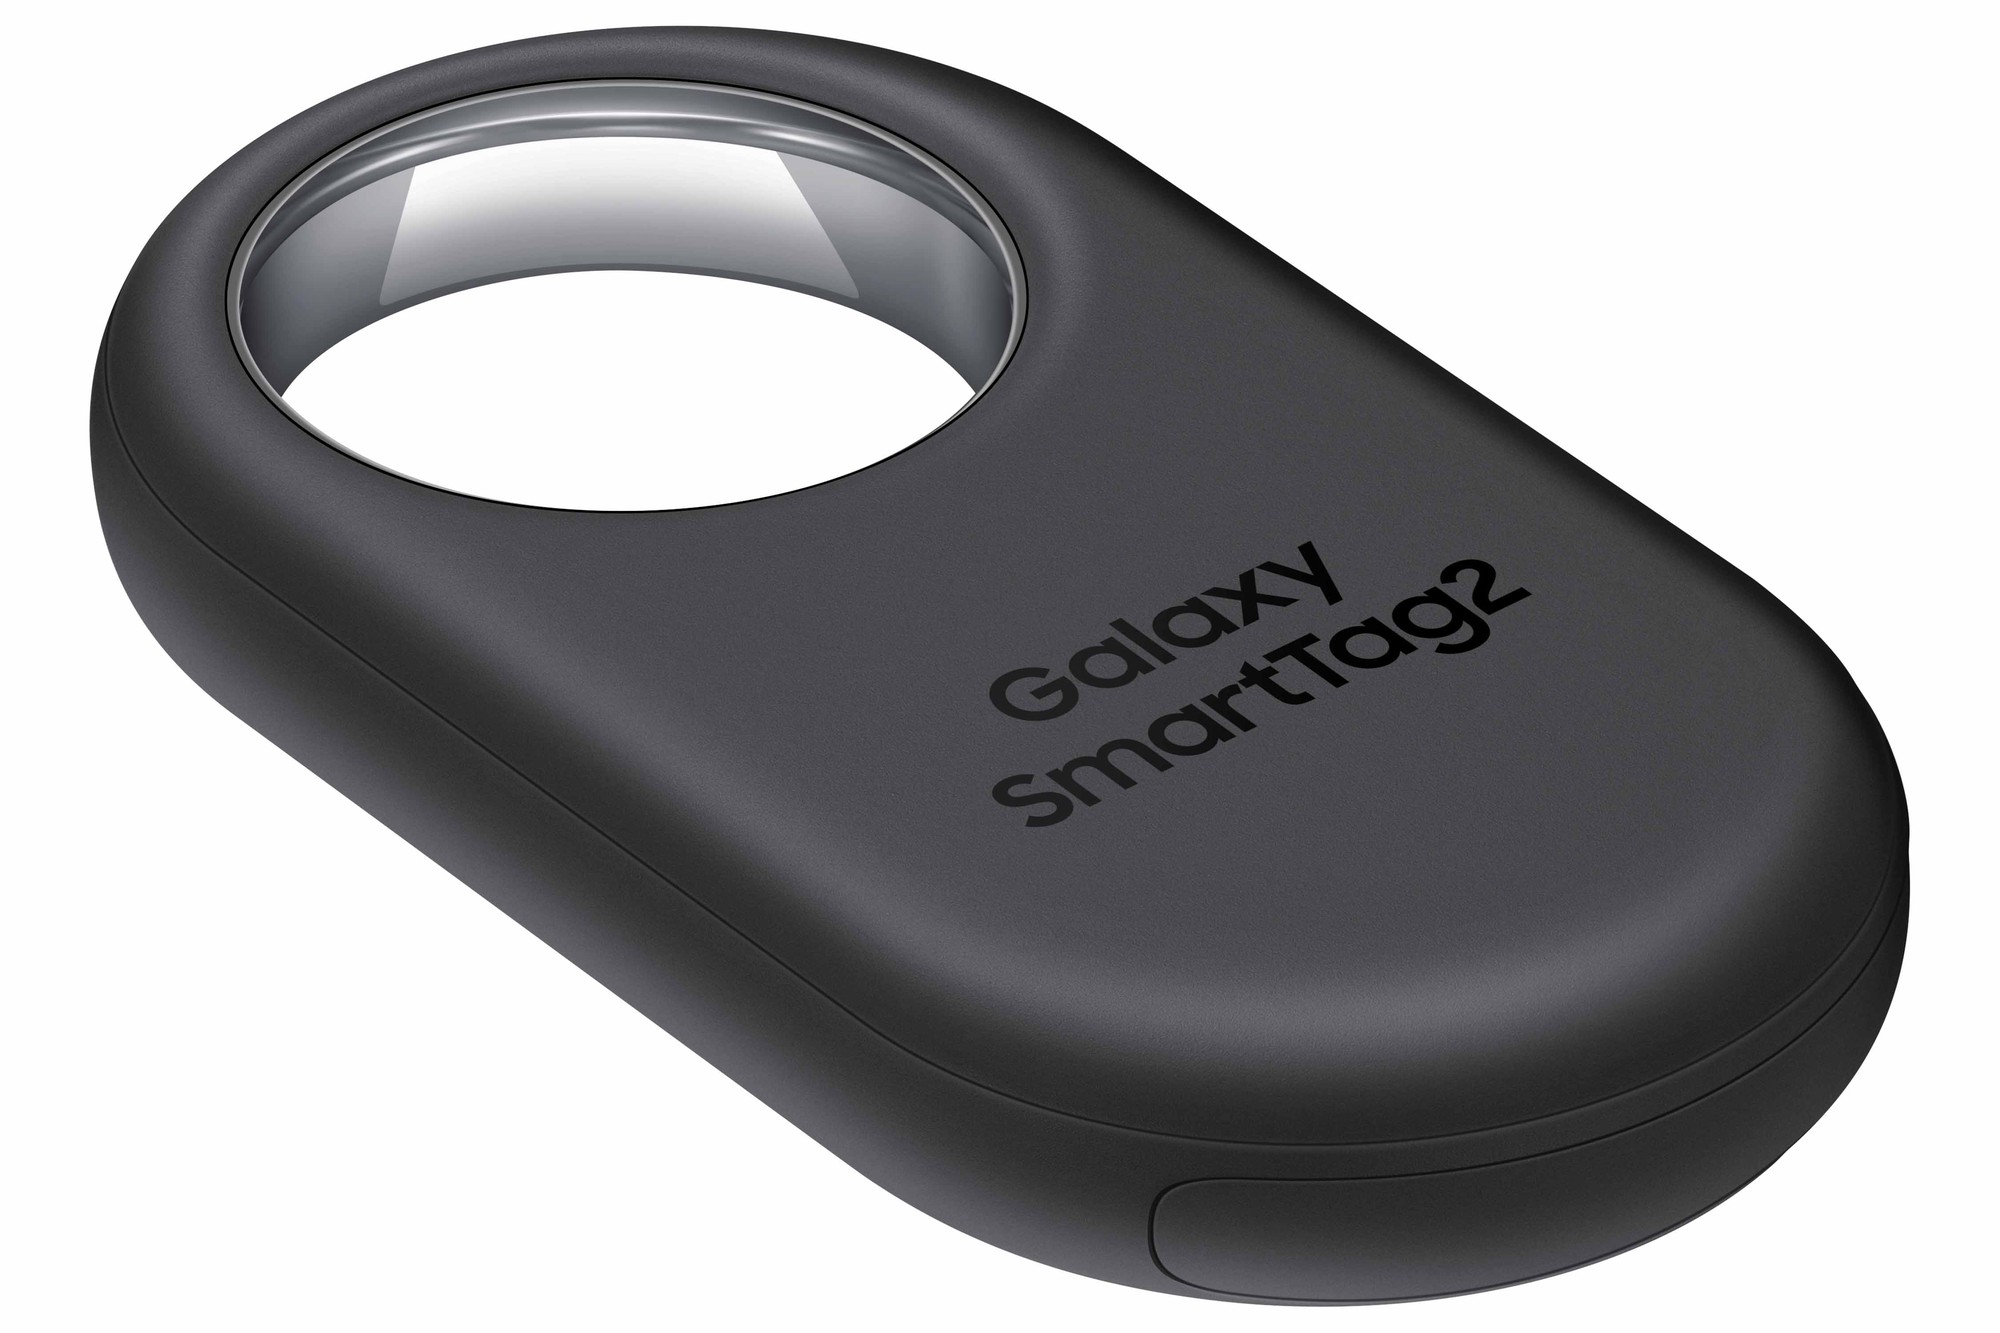 Samsung công bố phiên bản 2 của Galaxy SmartTag: Thiết kế mới, thời lượng pin lâu hơn và thêm các tính năng tìm kiếm - Ảnh 3.